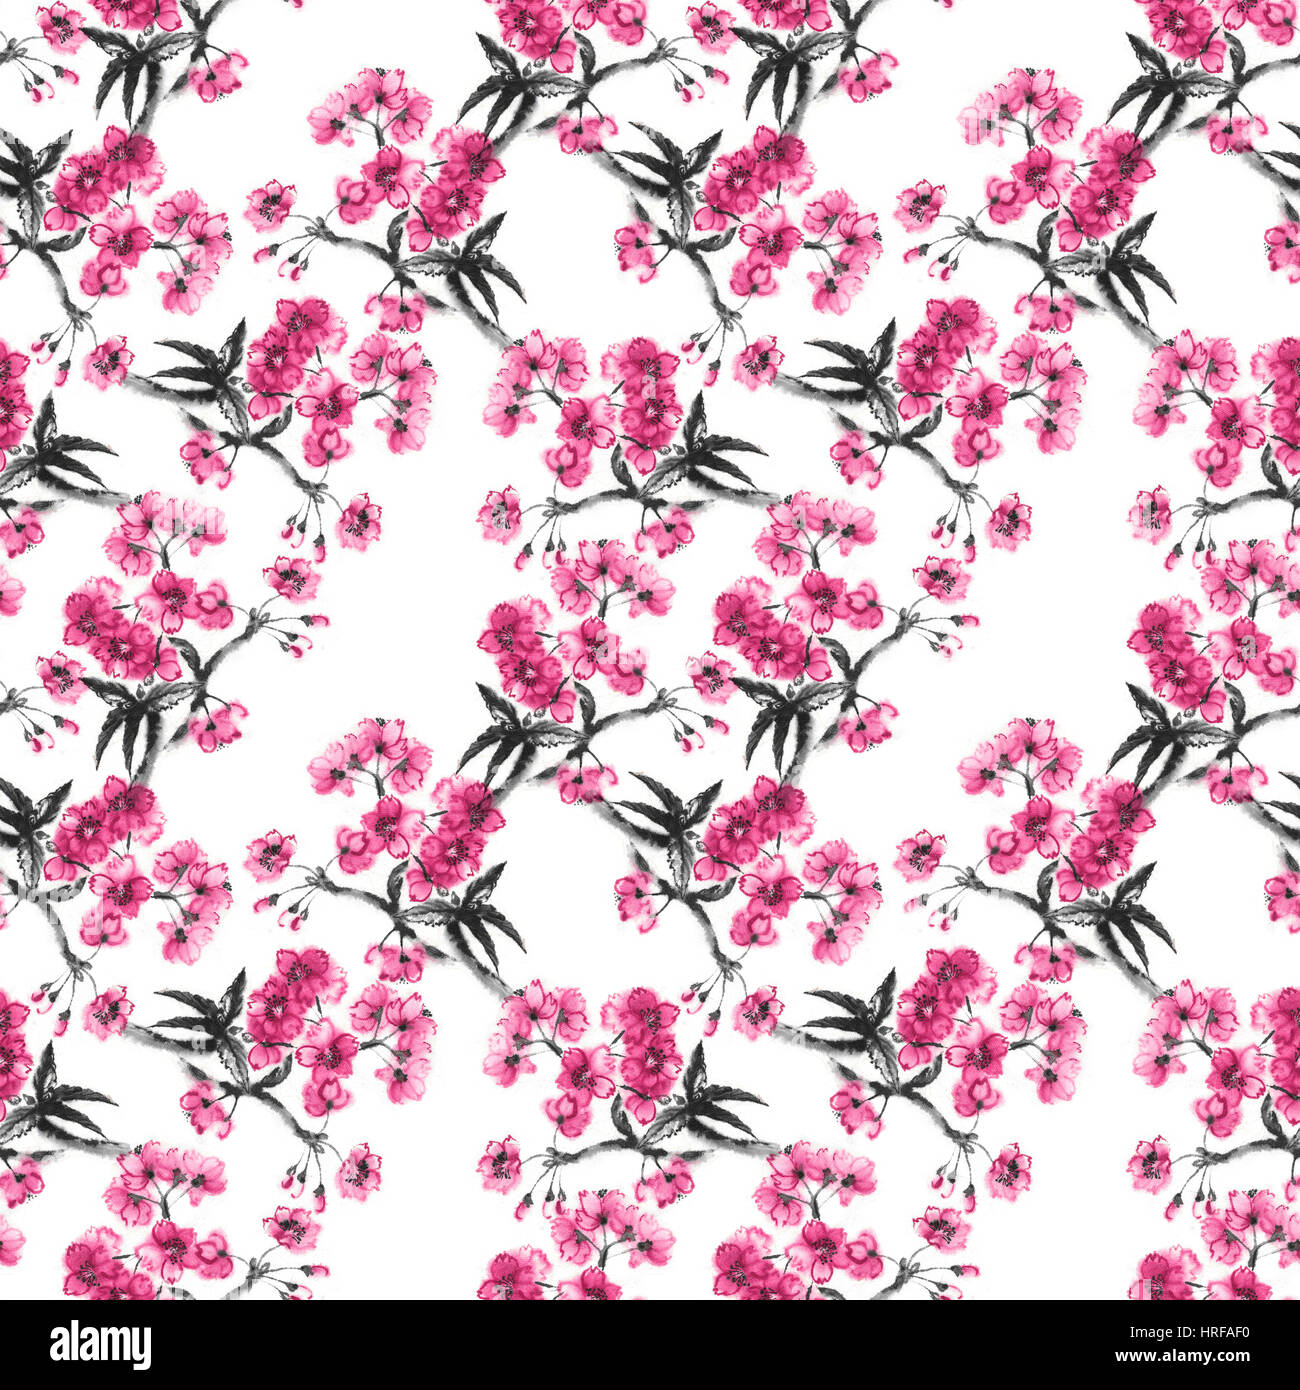 Rami di fiori di ciliegio, sfondo senza giunture, orientali fatti a mano di pittura di inchiostro, sumi-e stile pattern sakura. Foto Stock